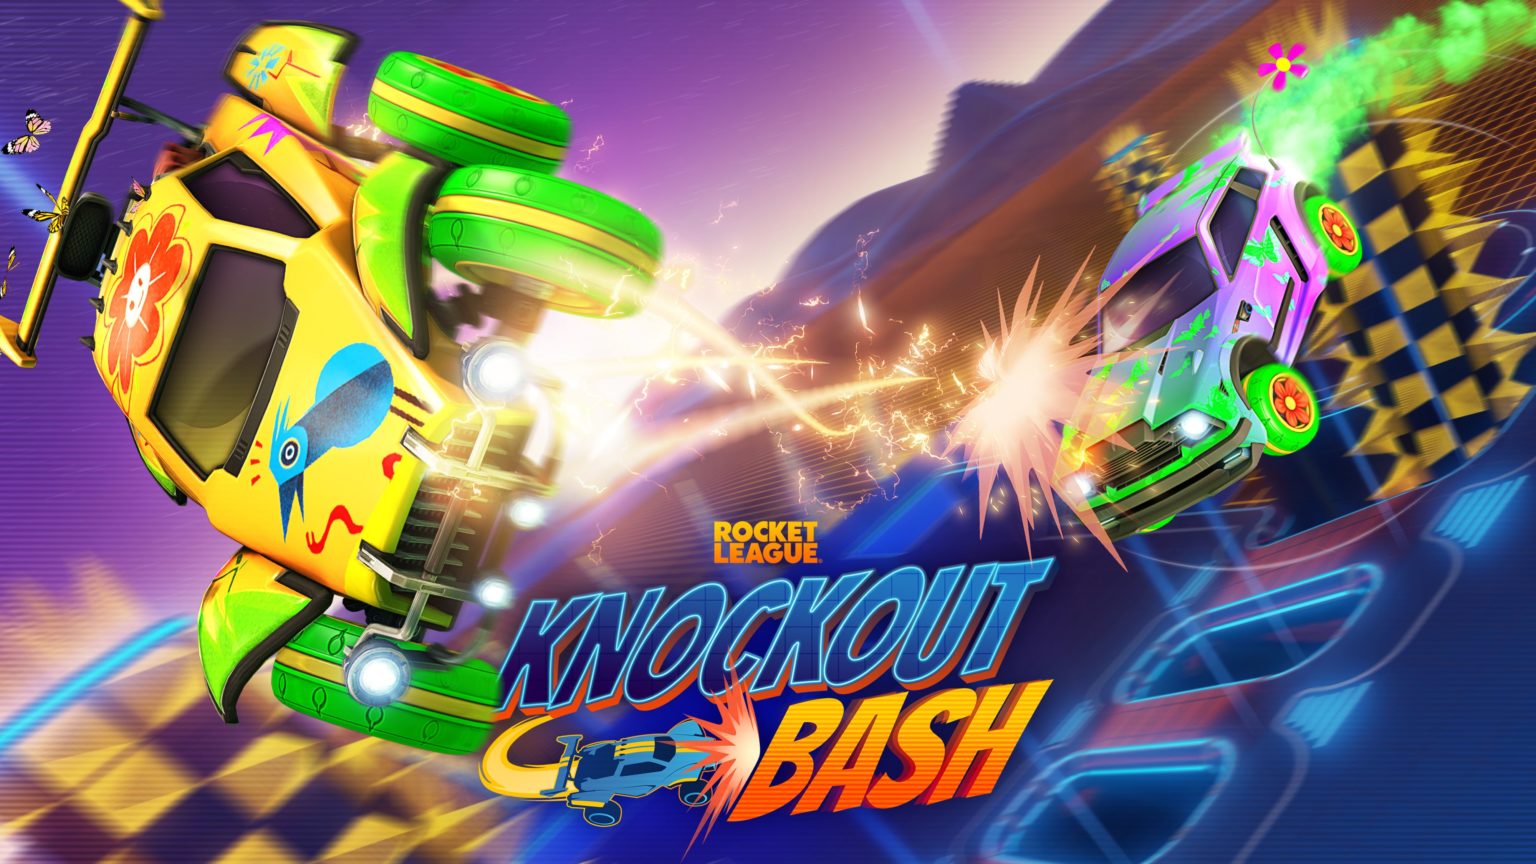 Rocket League anunciou seu novo modo de sobrevivência, Knockout Bash!